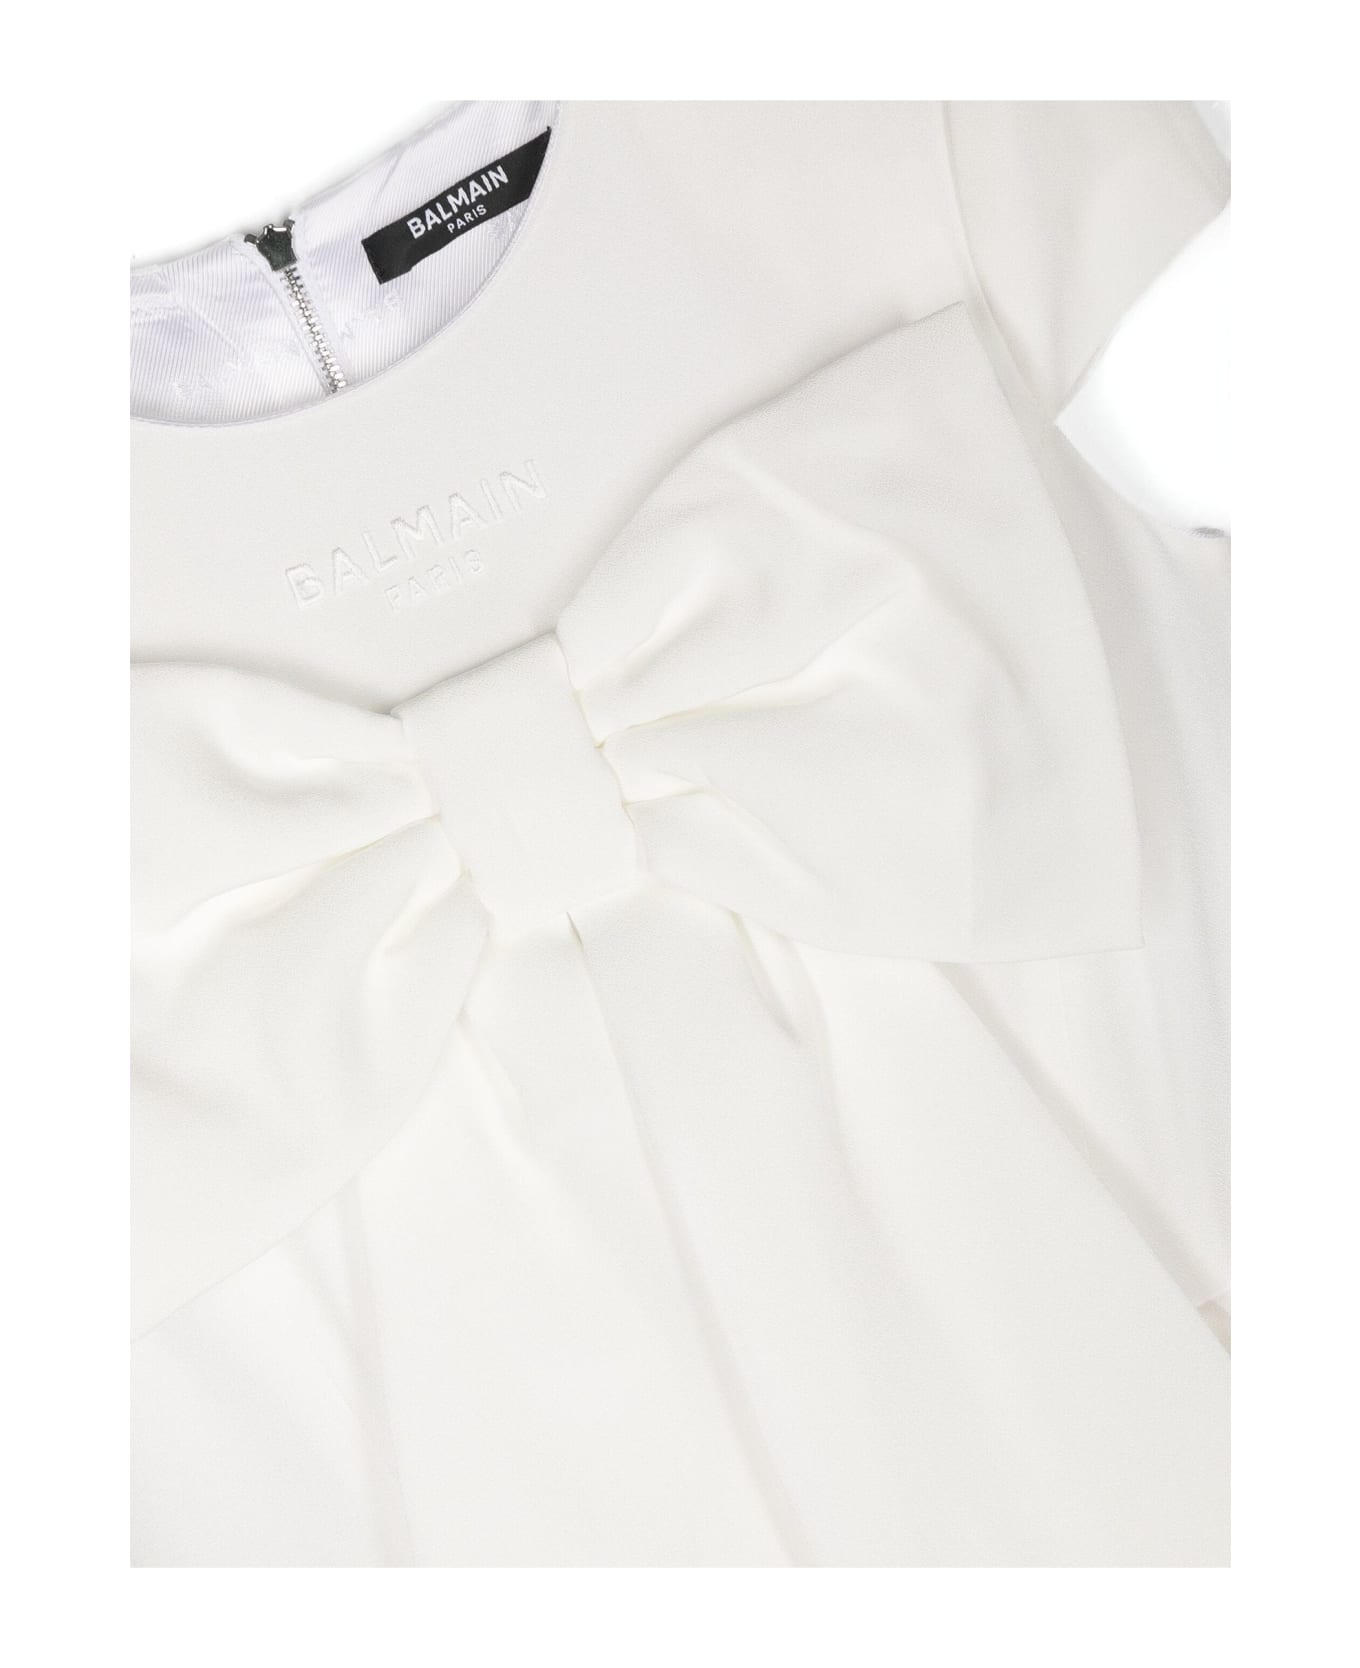 Balmain Dresses White - White ワンピース＆ドレス